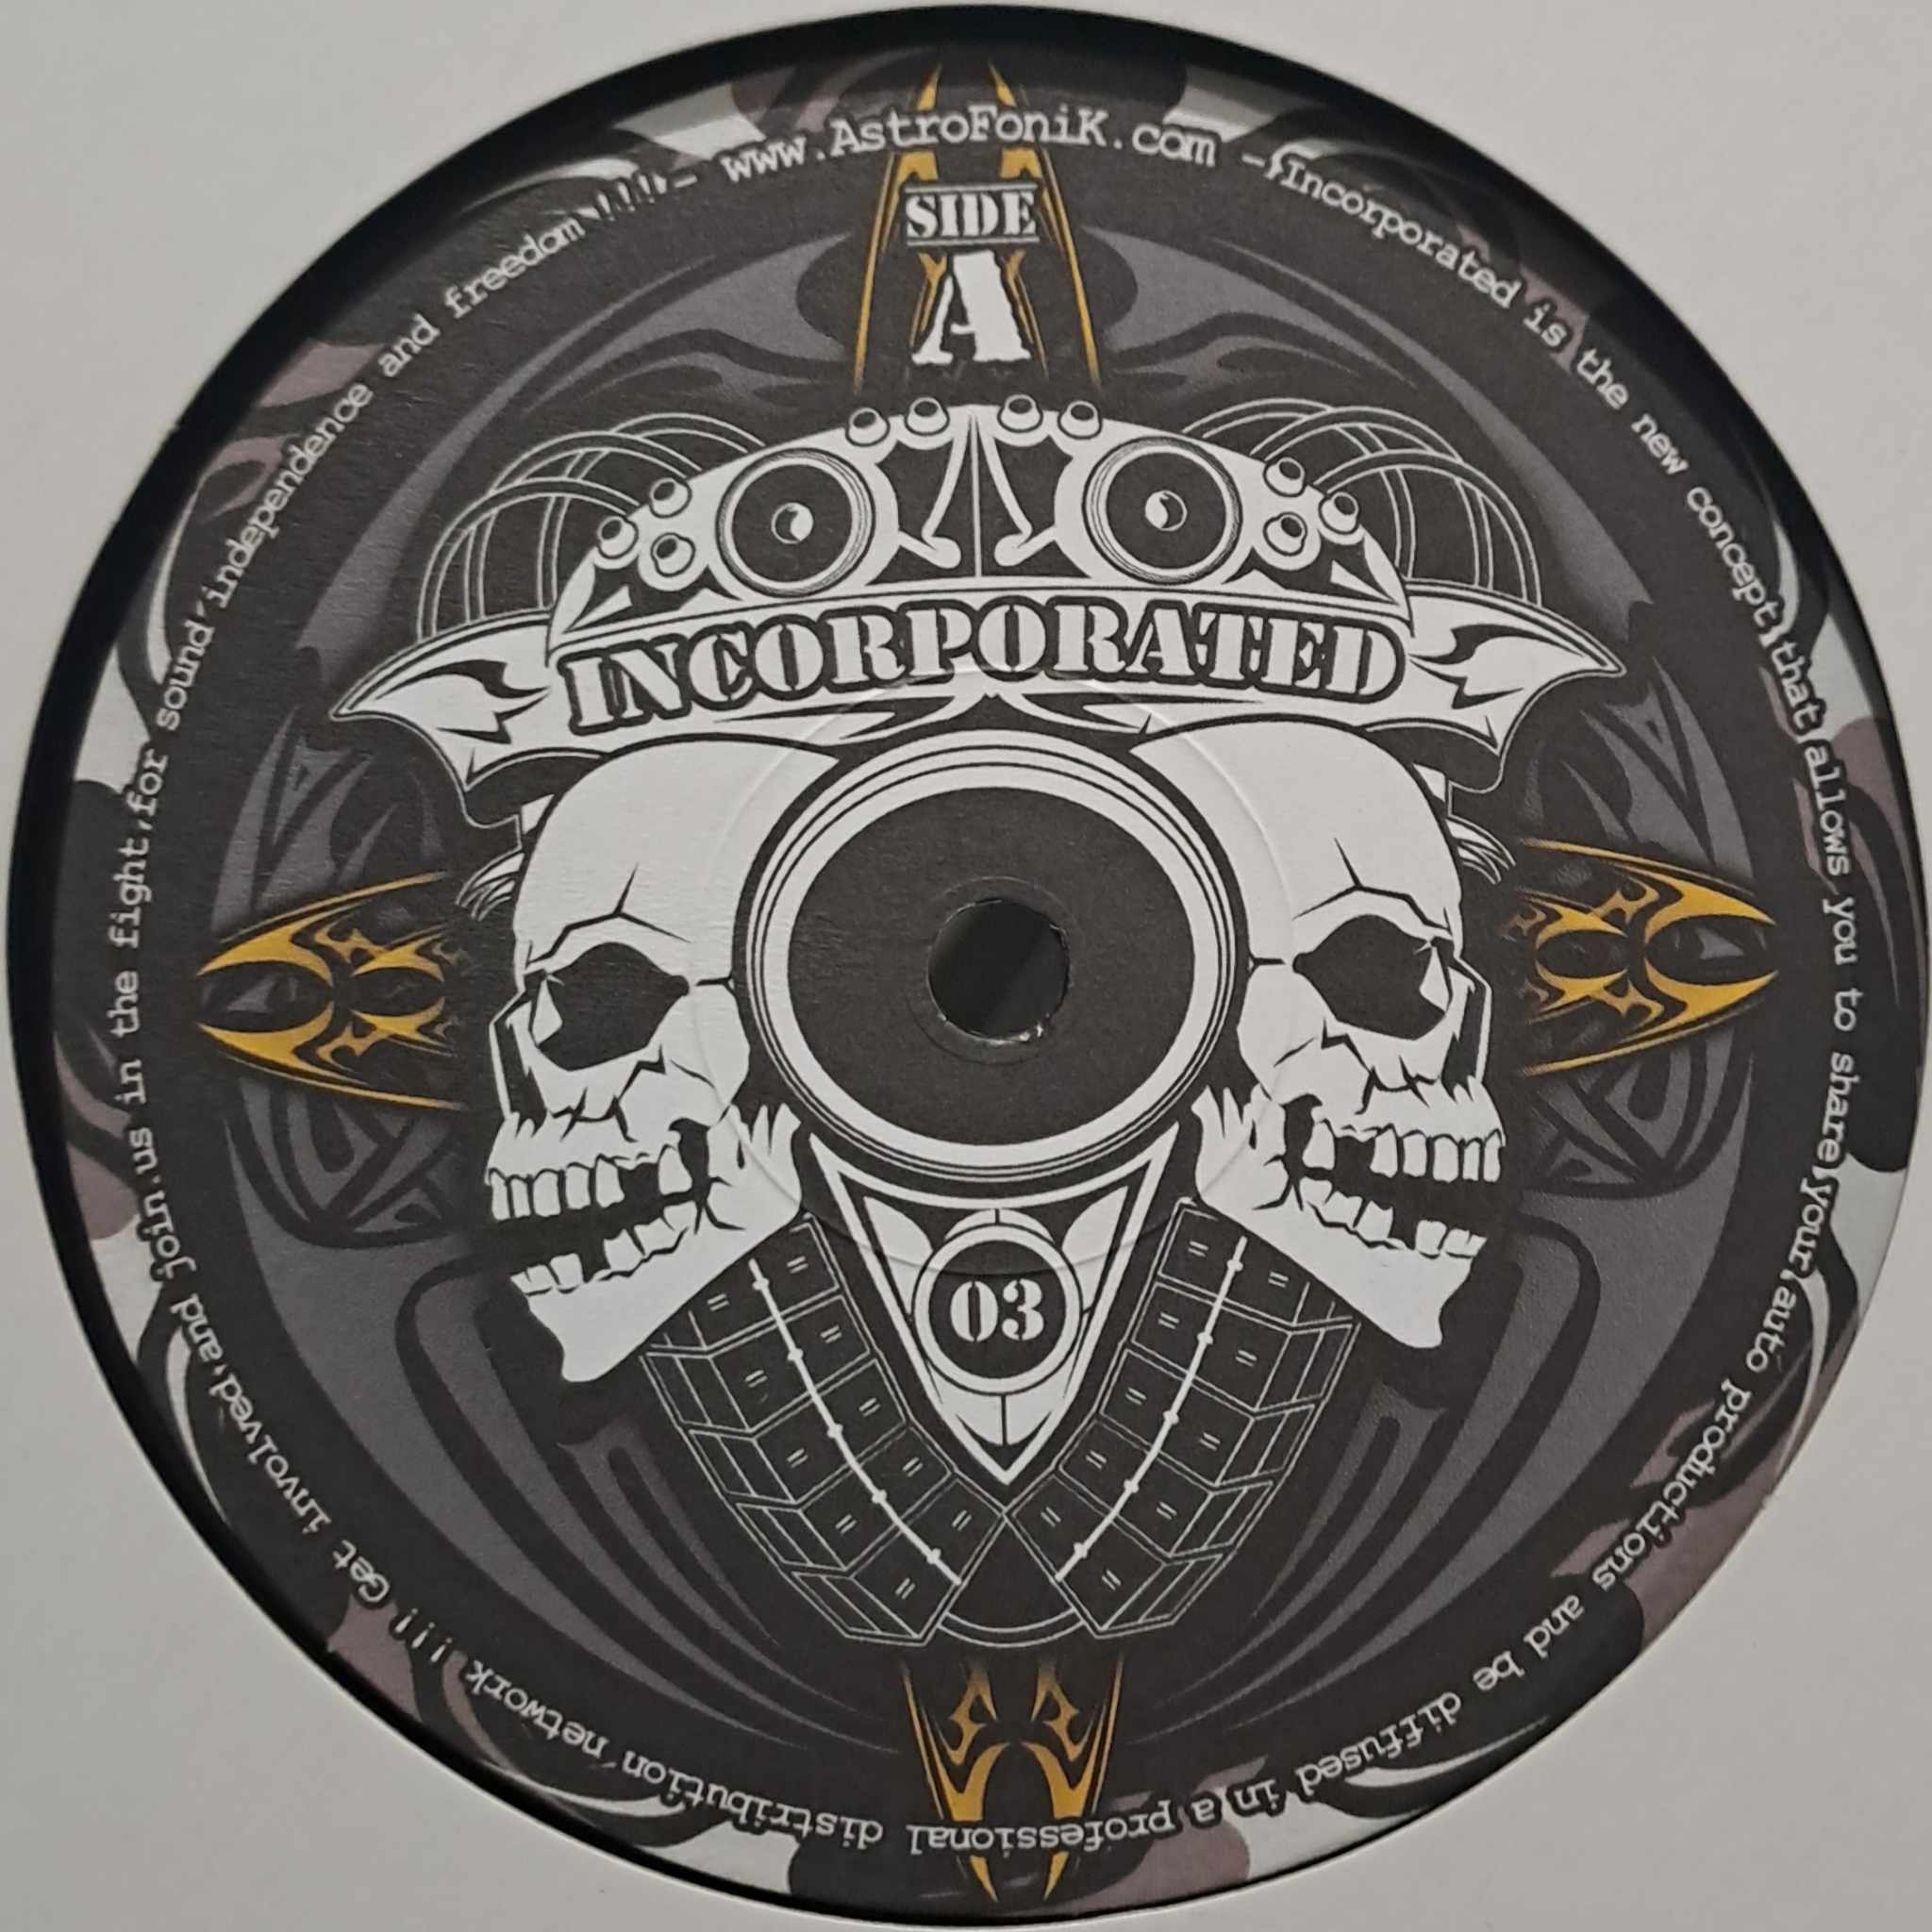 Incorporated 03 - vinyle freetekno